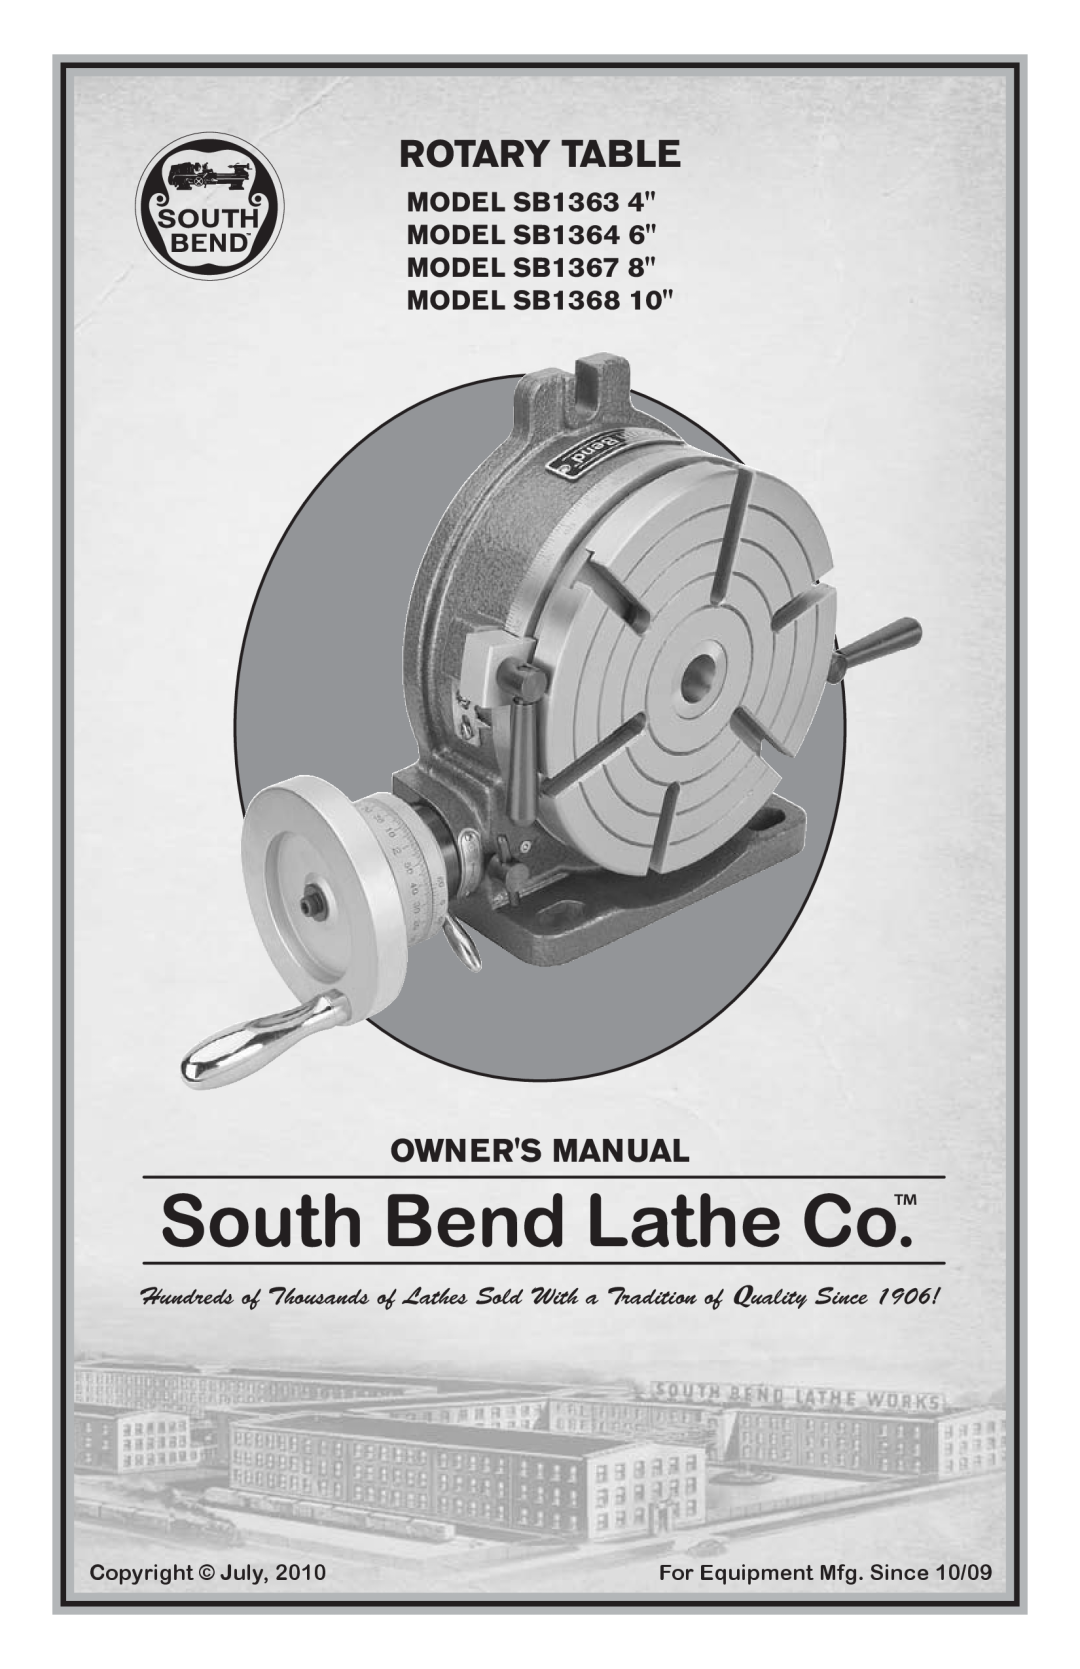 Southbend owner manual MODEL SB1363, MODEL SB1364, MODEL SB1367, MODEL SB1368, Rotary Table, Owners Manual 